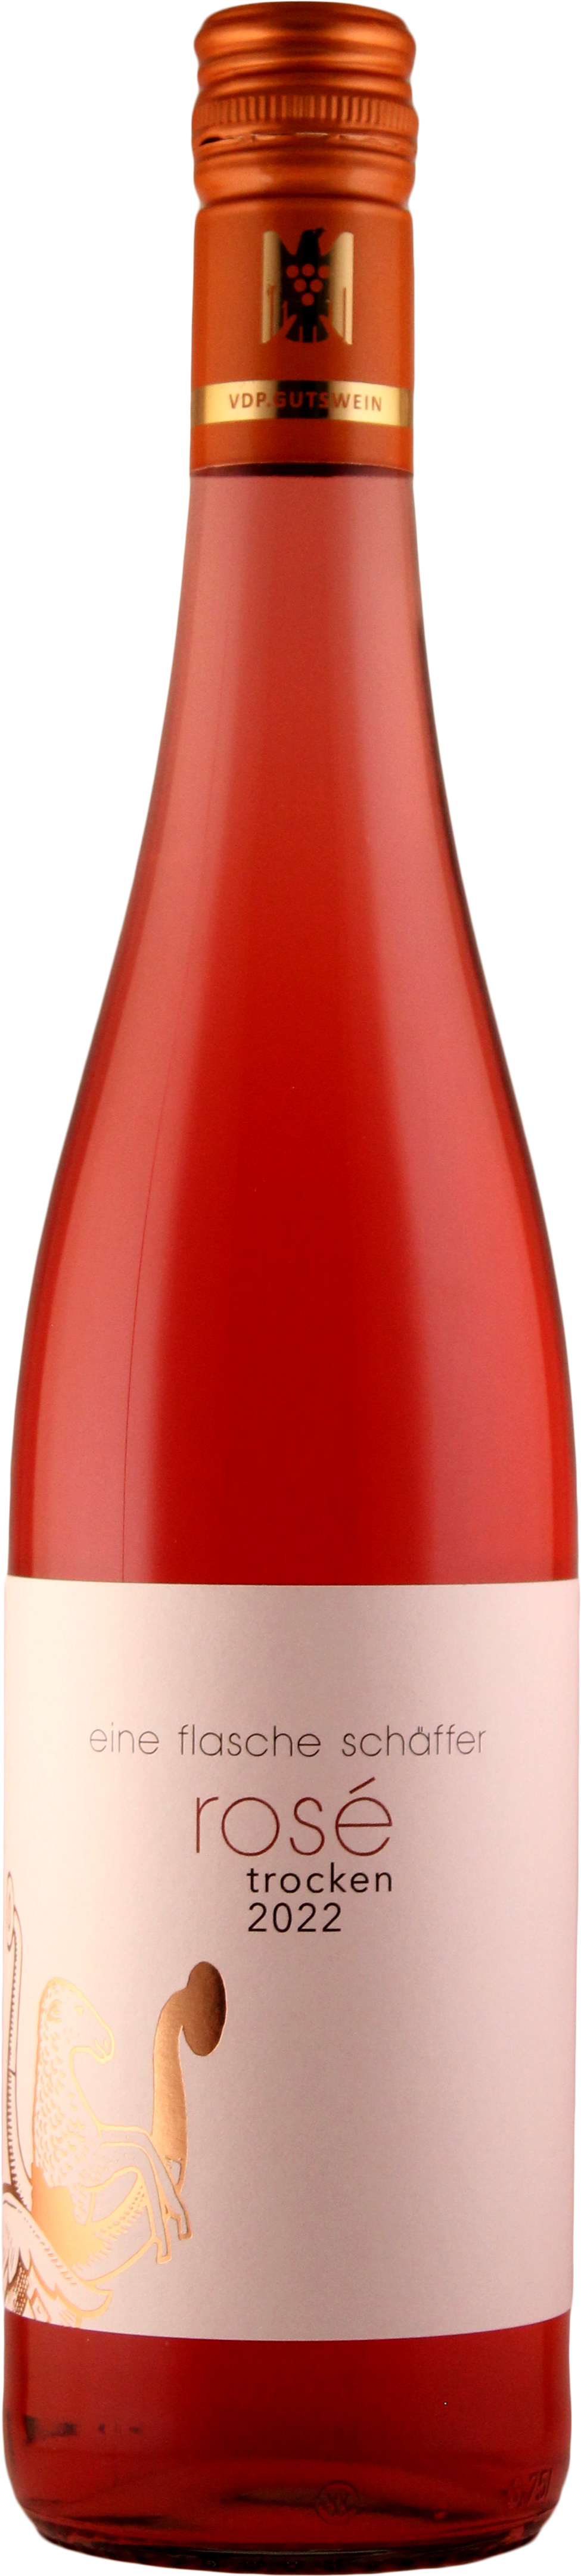 2022 eine flasche schäffer Rosé VDP.Gutswein trocken